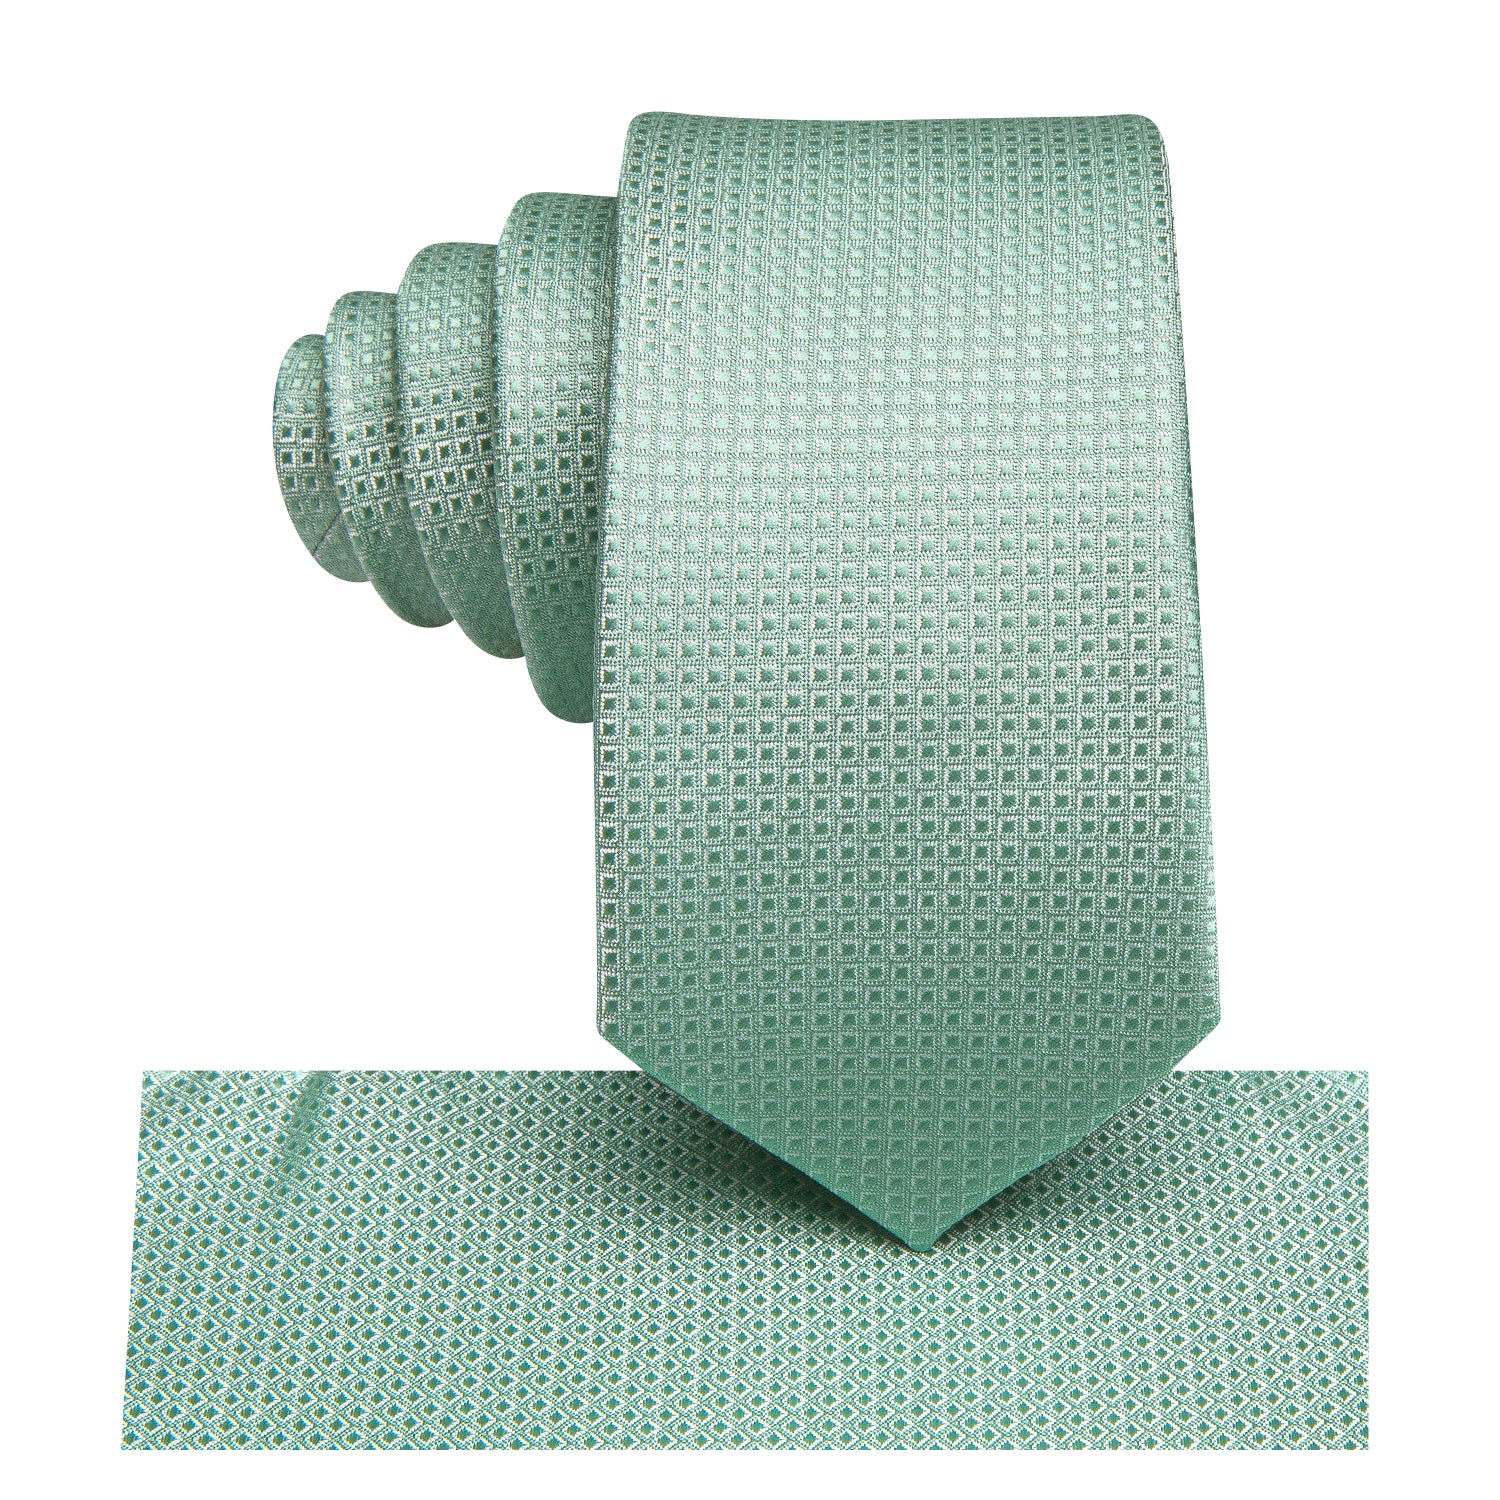 Mint Green Plaid Boys Tie Pocket Square 6cm